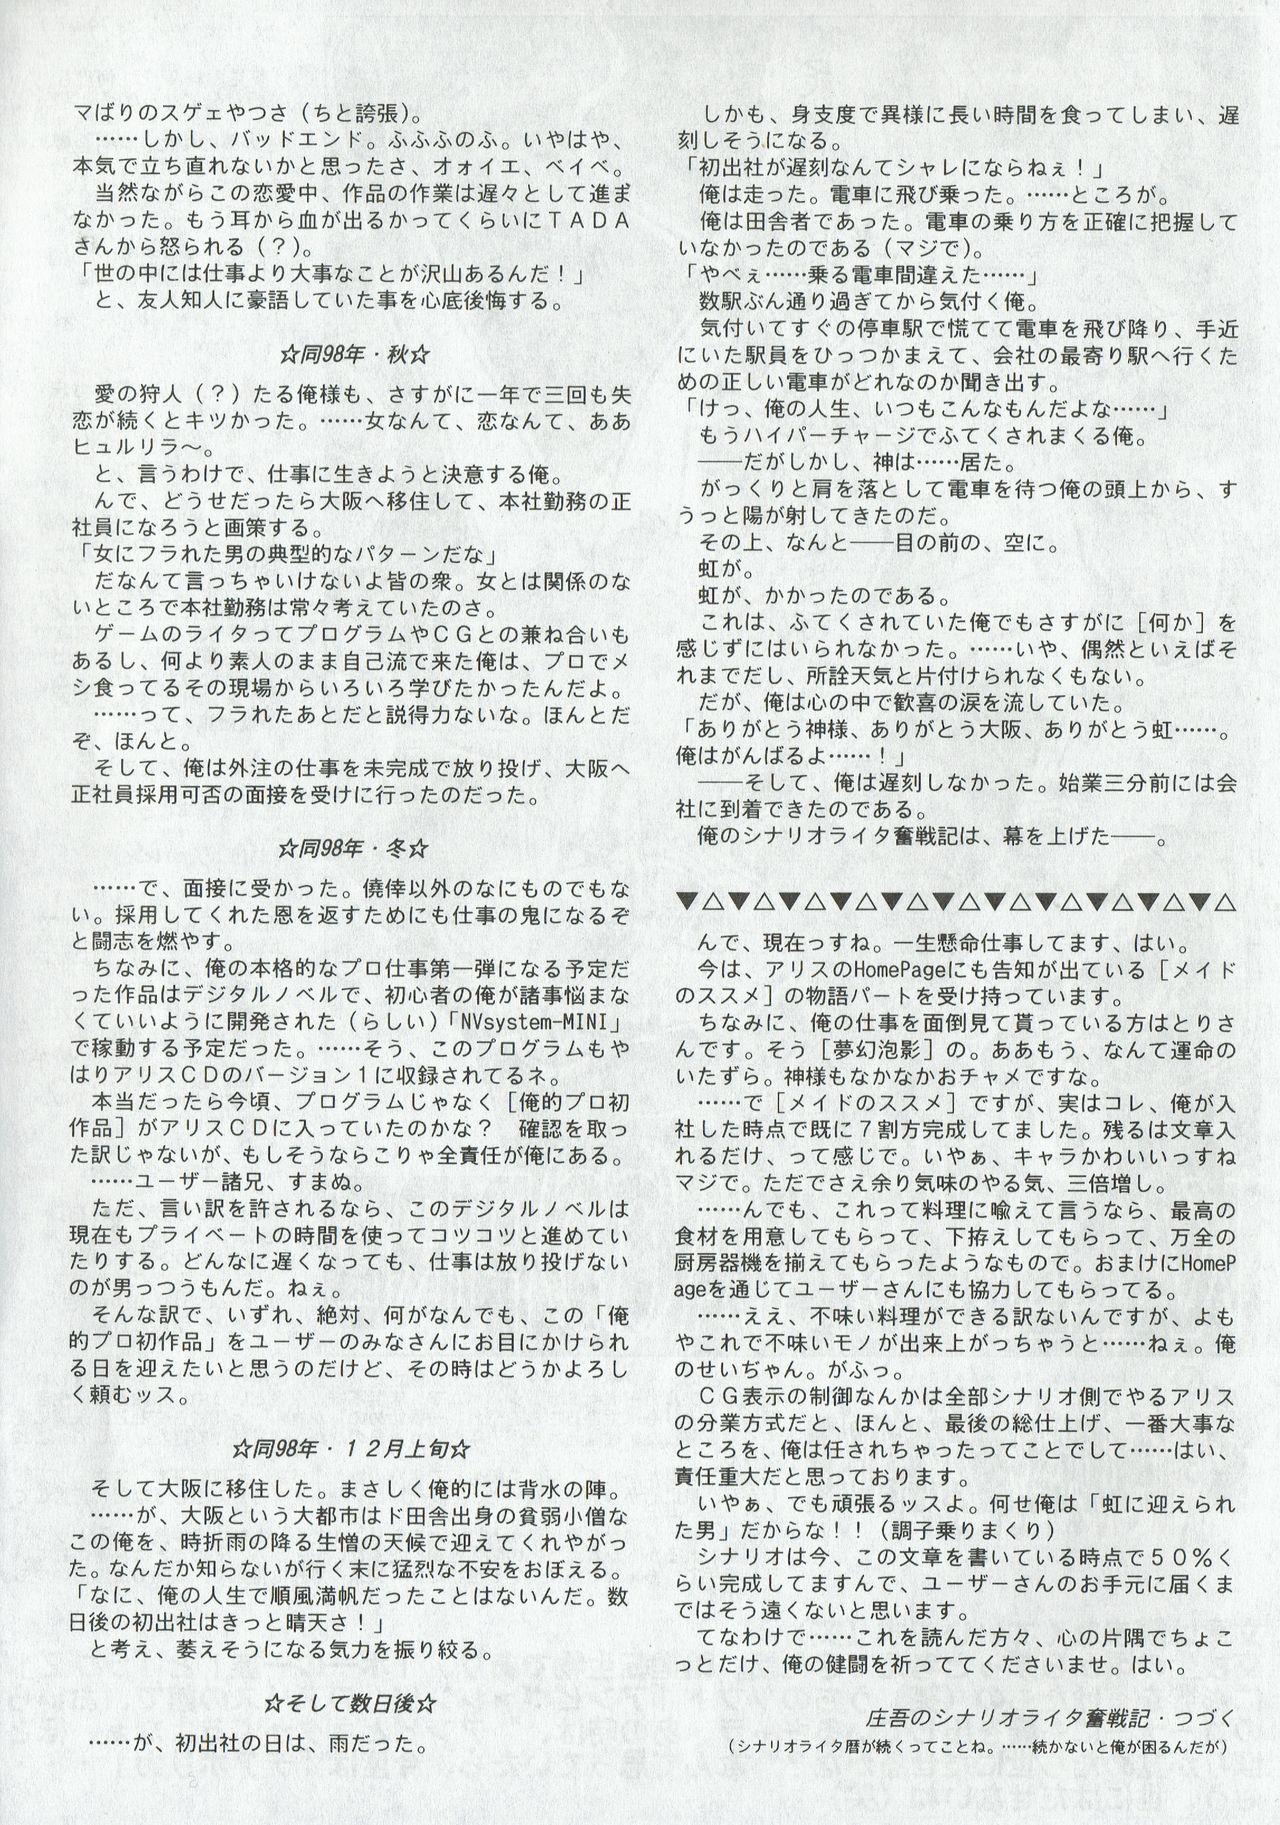 Arisu no Denchi Bakudan Vol. 04 20